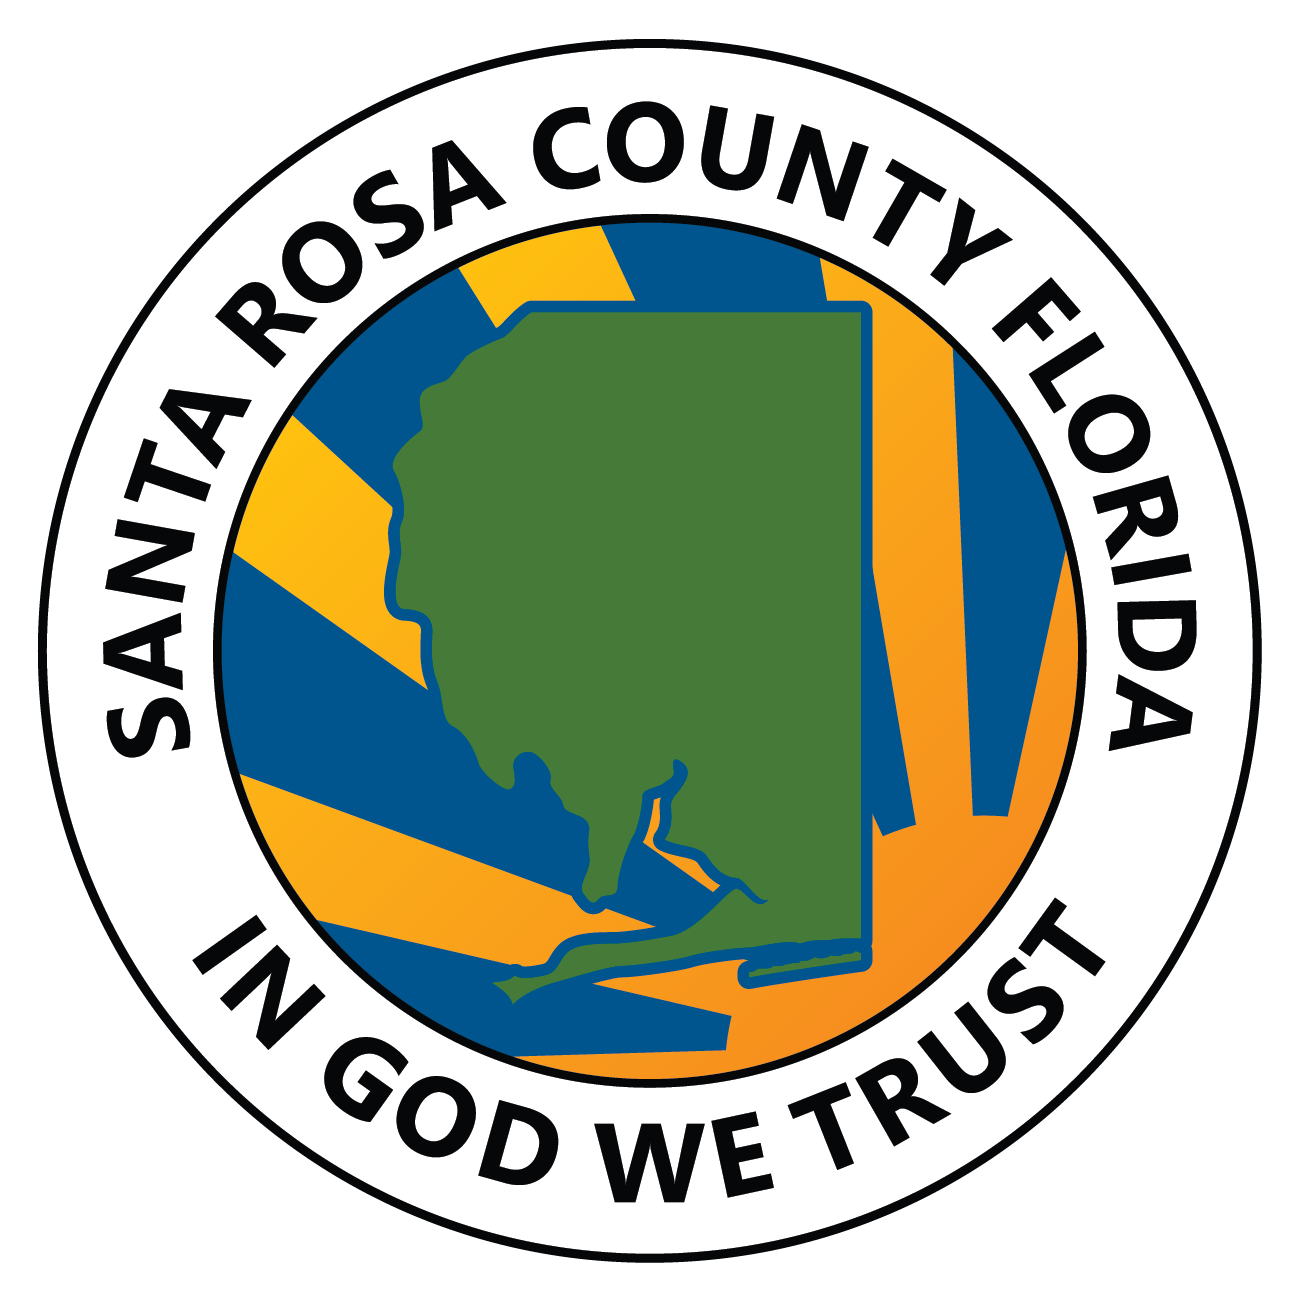 05/01/24 - Santa Rosa County Update